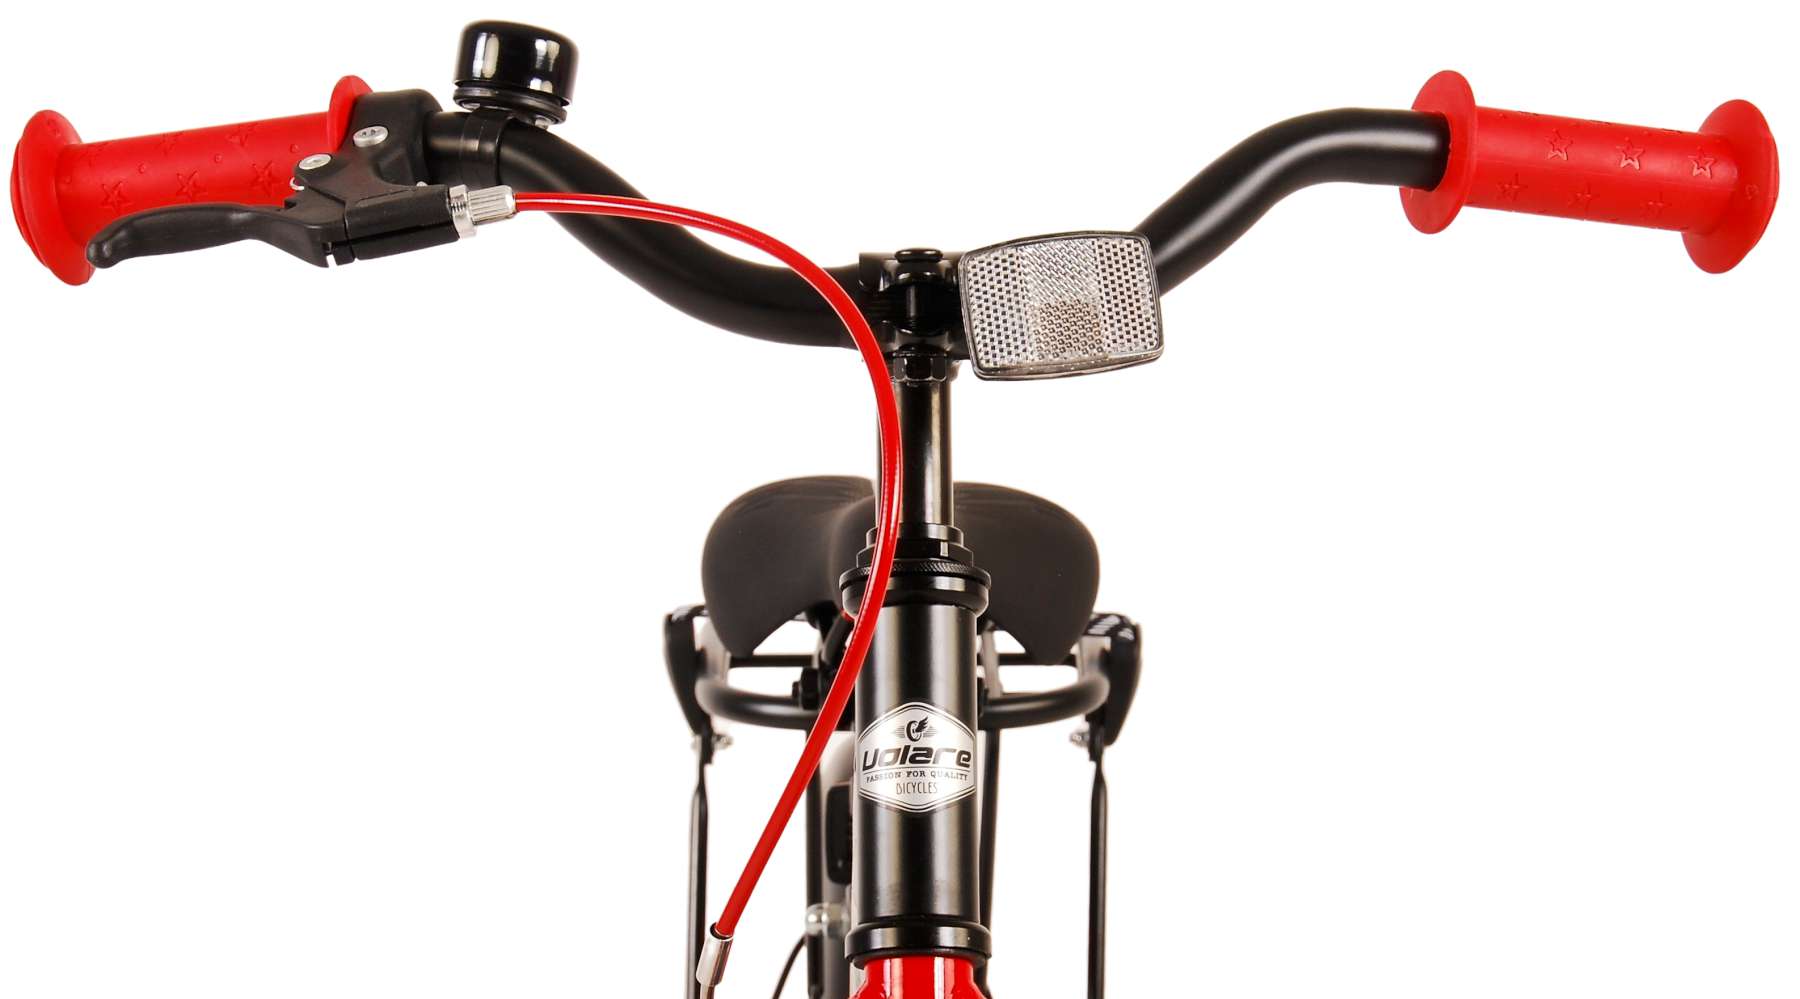 Kinderfahrrad Thombike für Jungen 16 Zoll Kinderrad in Schwarz Rot